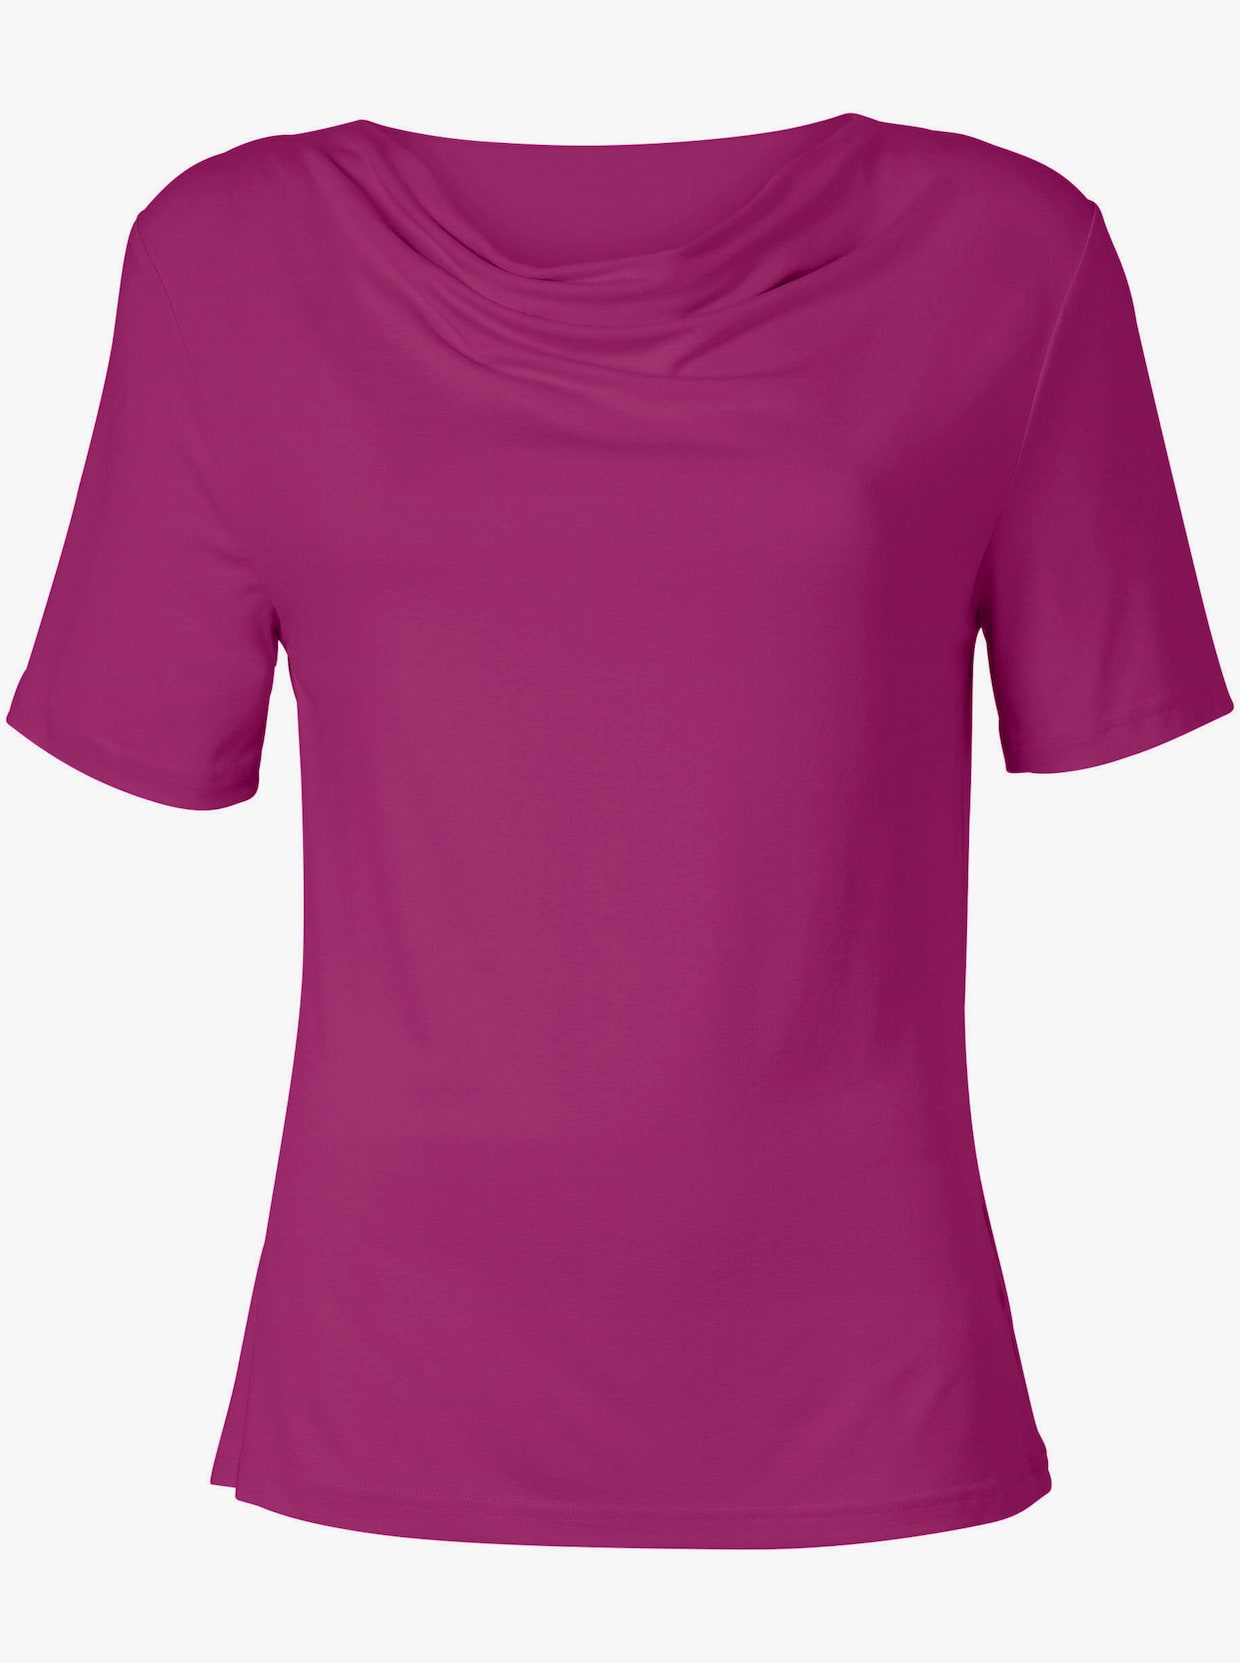 Tričko s vodopádovým golierom - purpurová